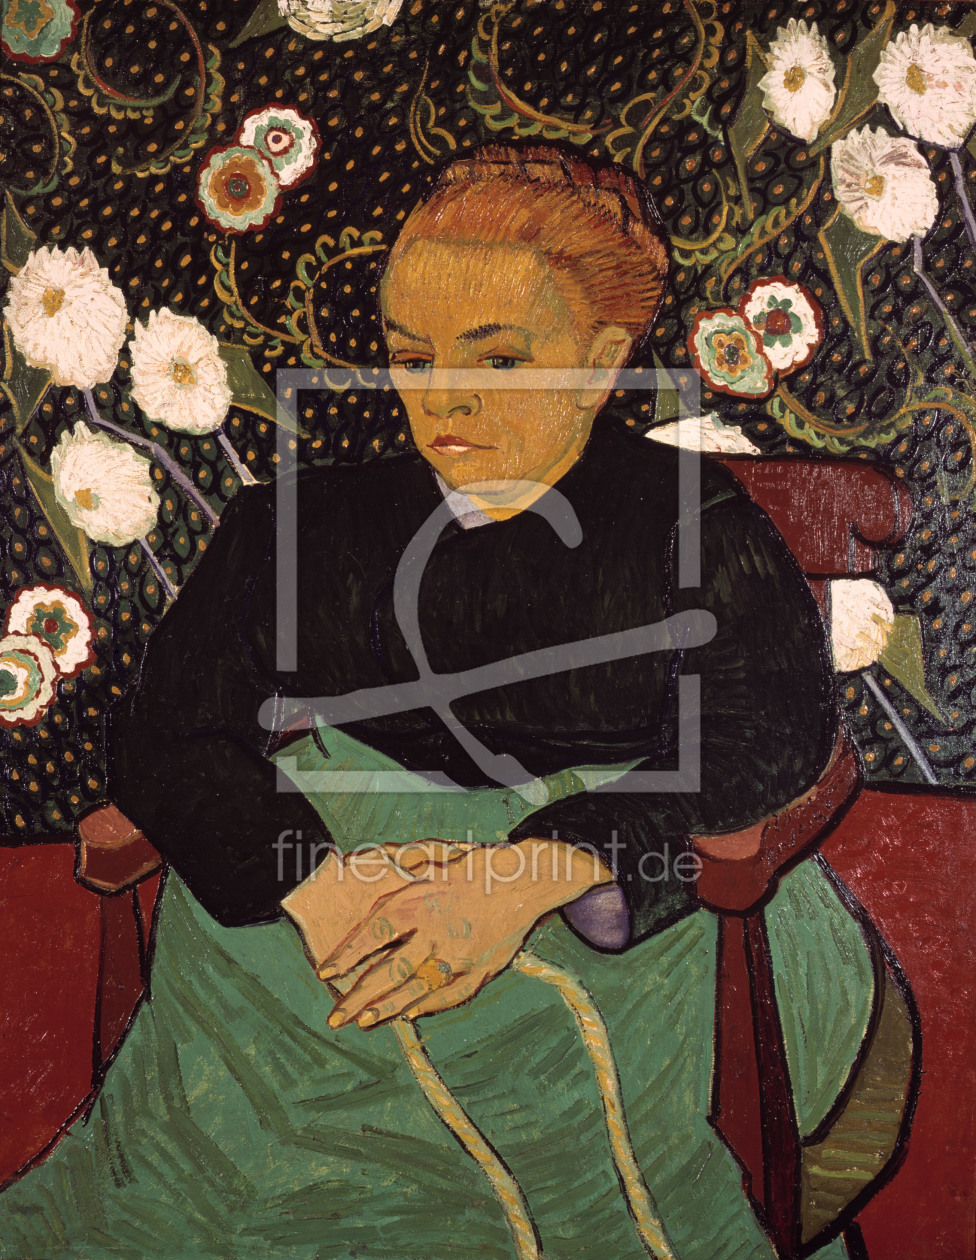 Bild-Nr.: 30003378 van Gogh / Portrait of Augustine Roulin erstellt von van Gogh, Vincent